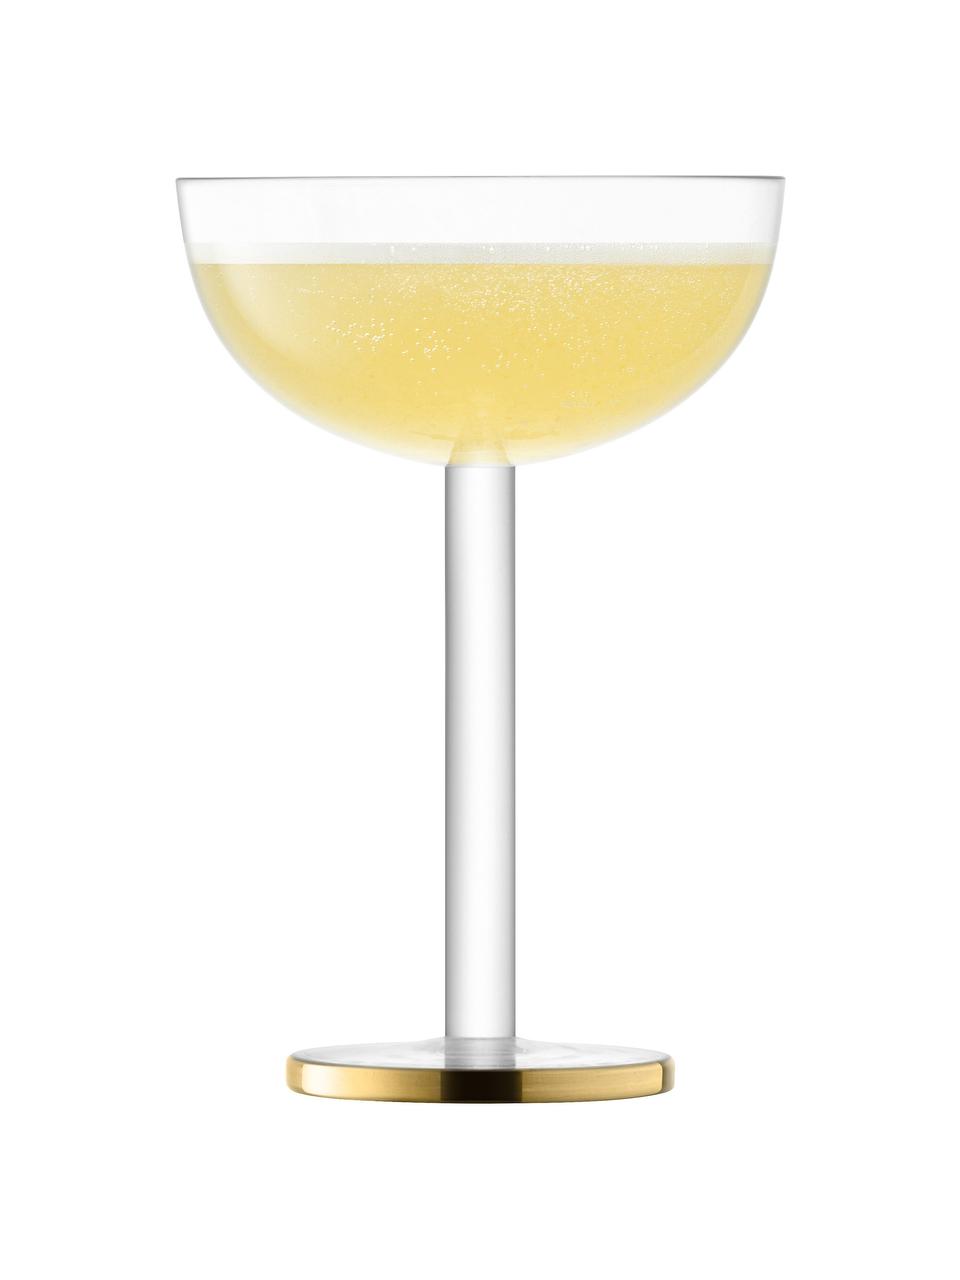 Mundgeblasene Champagnerschalen Luca mit Goldrand, 2 Stück, Glas, Transparent mit Goldrand, Ø 11 x H 15 cm, 200 ml